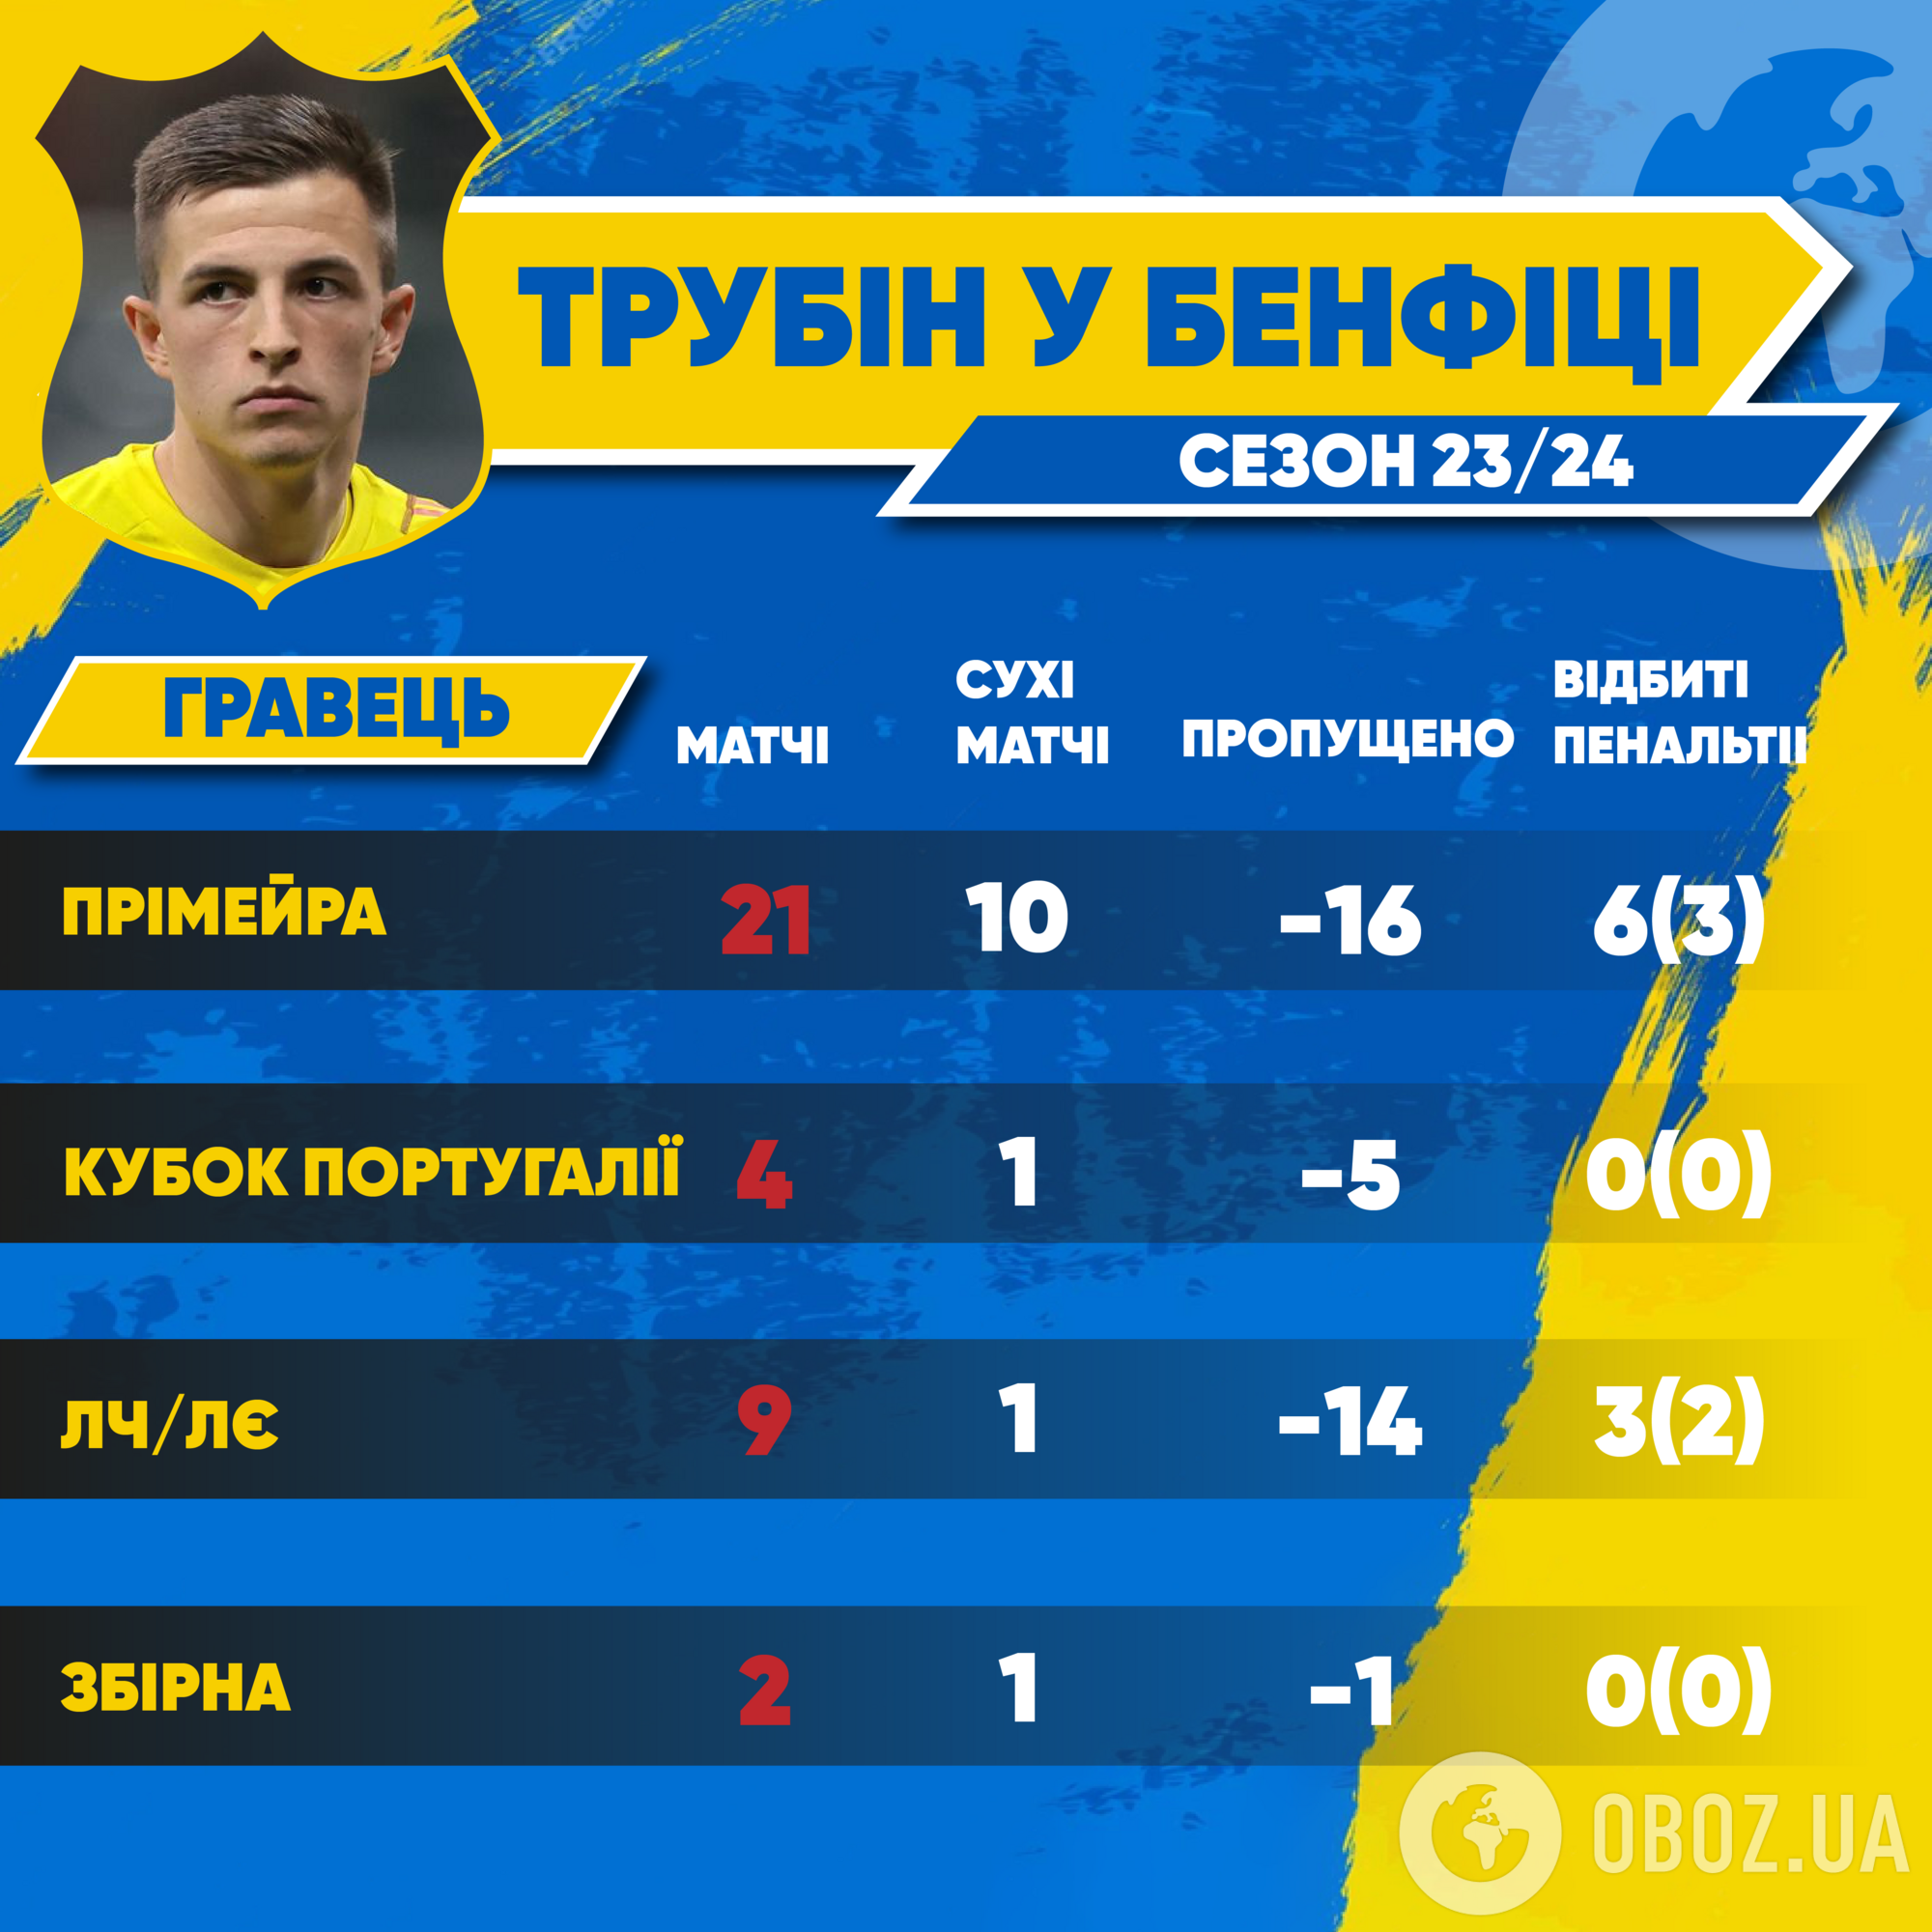 Битва за Евро: кого ставить в ворота сборной Украины и что повлияет на выбор Реброва в матче с Боснией